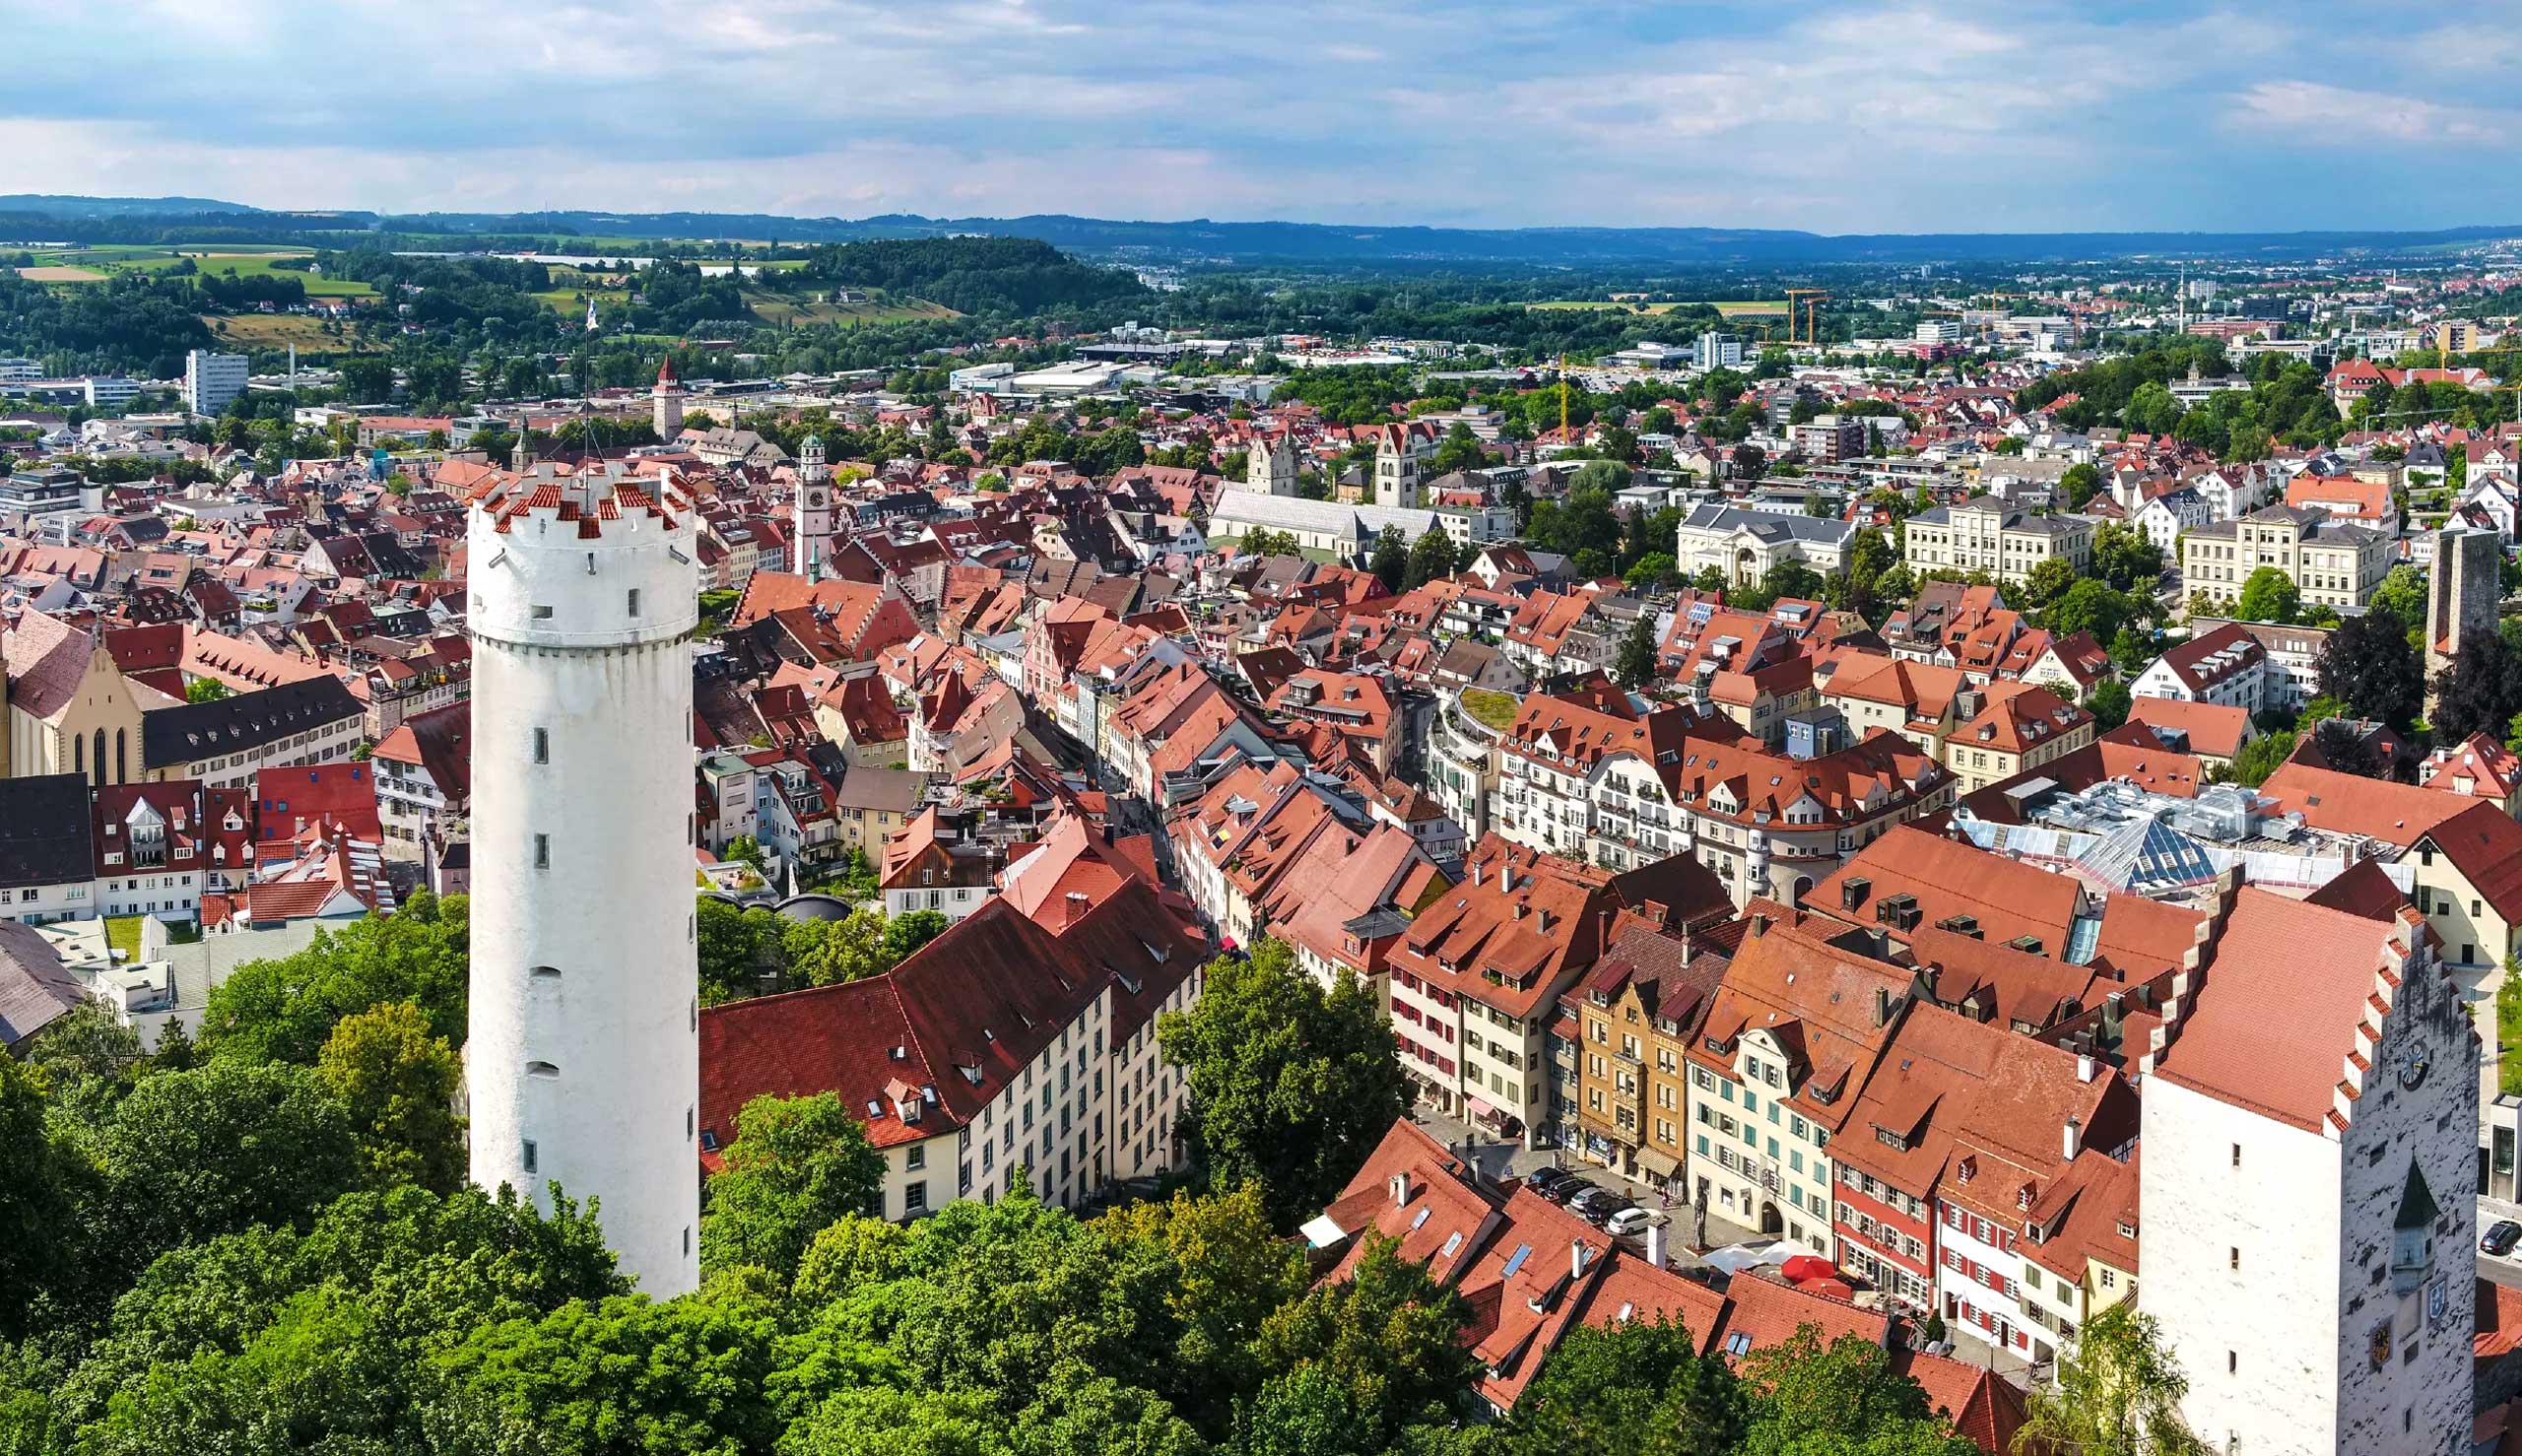 Ravensburgin kaupunki sijaitsee suositulla matkustusalueella Bodenjärvi-Upper Swabia-Allgäu, ja sitä kutsutaan myös tornikaupungiksi. 